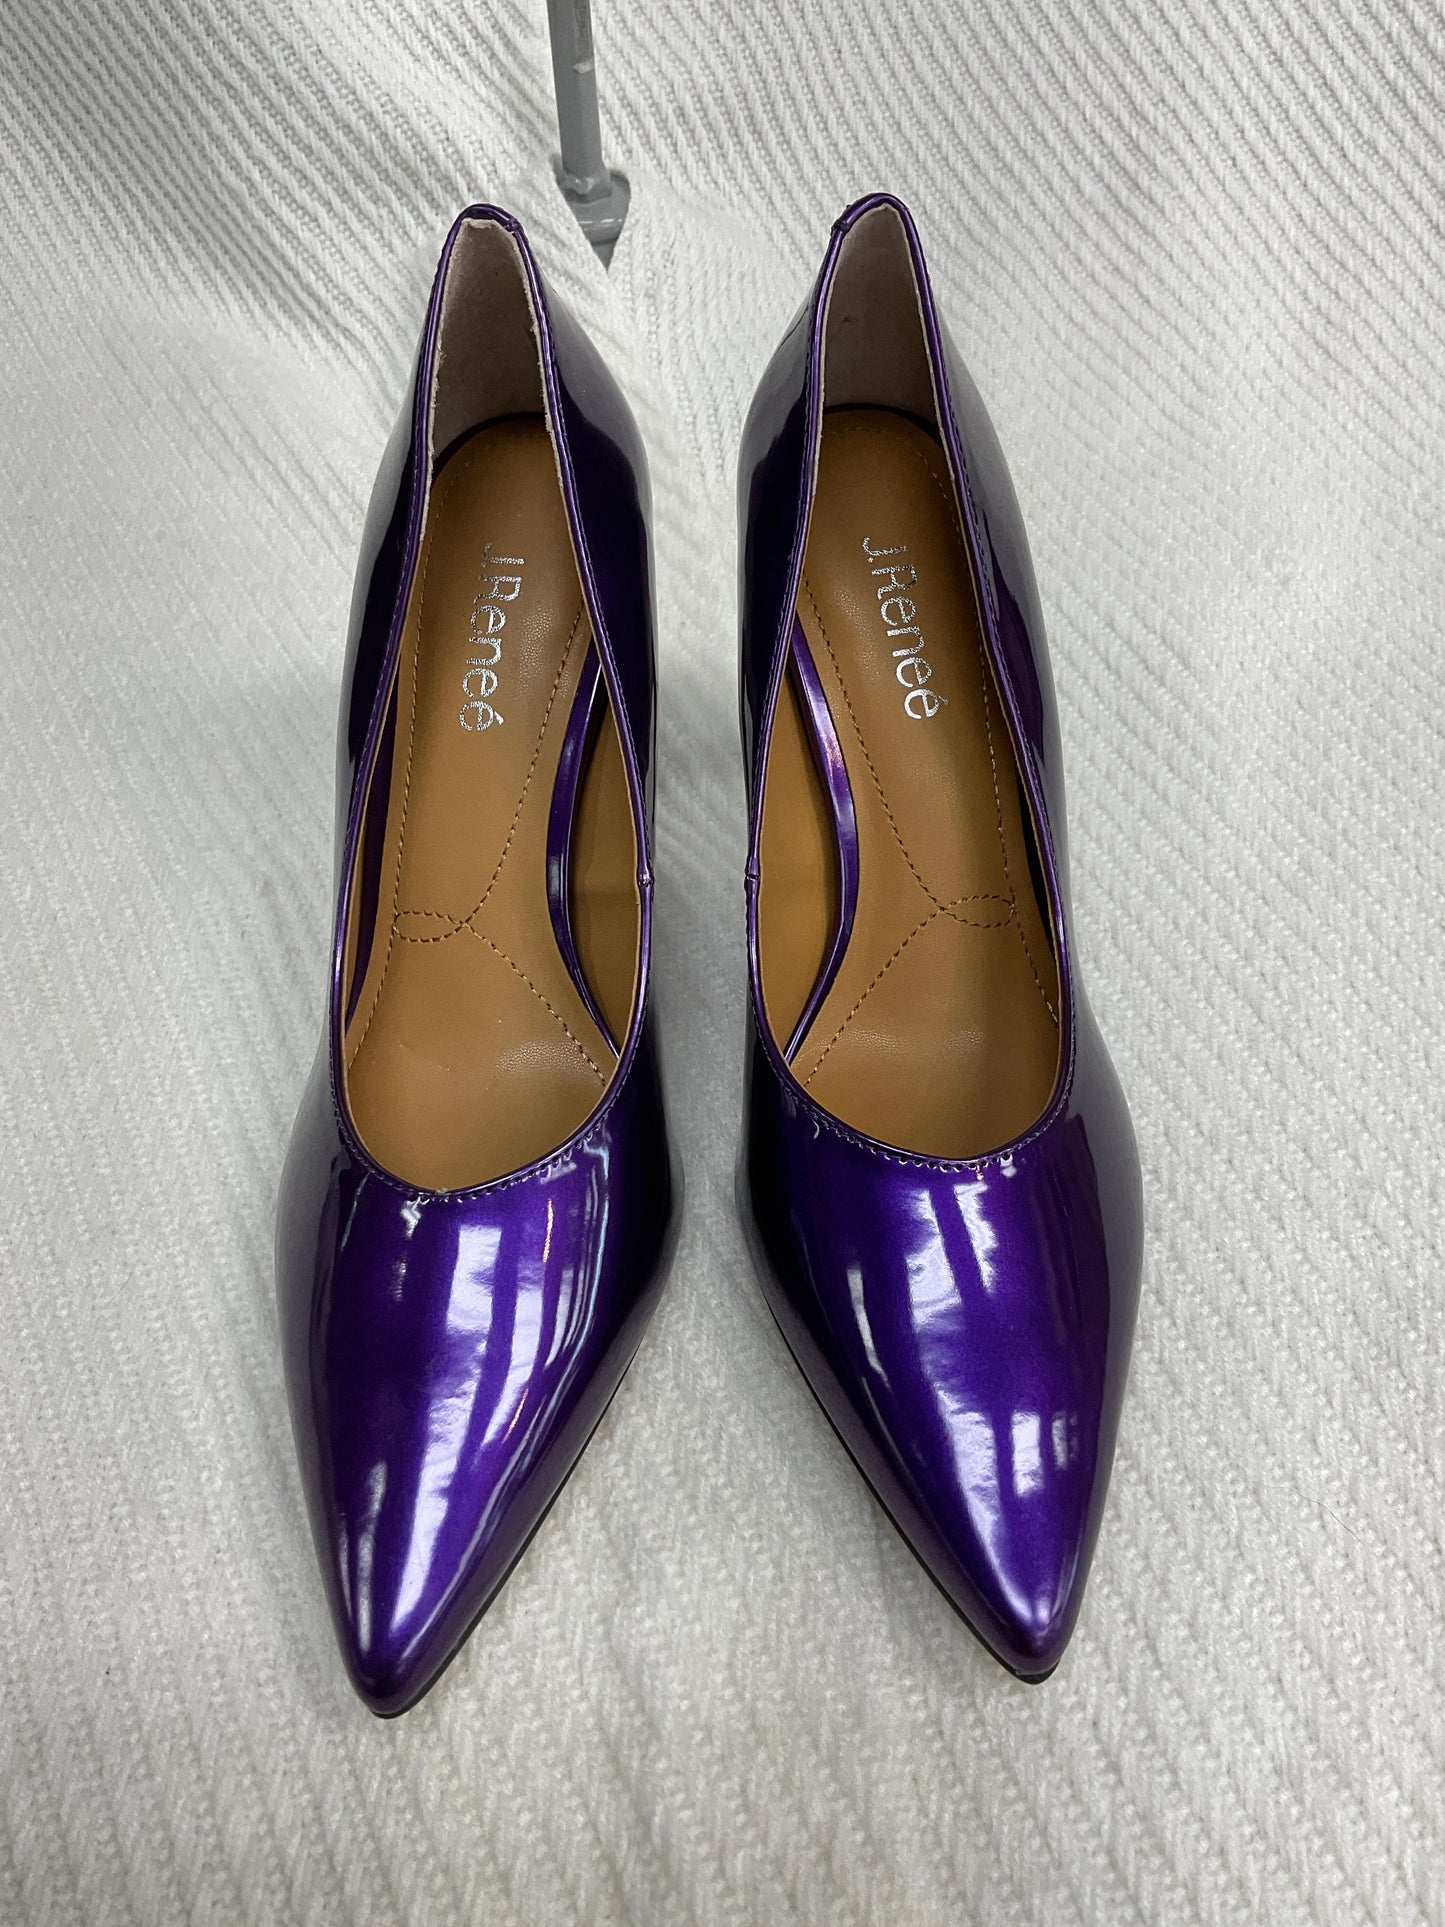 Purple Shoes Heels Stiletto J Renee, Size 10